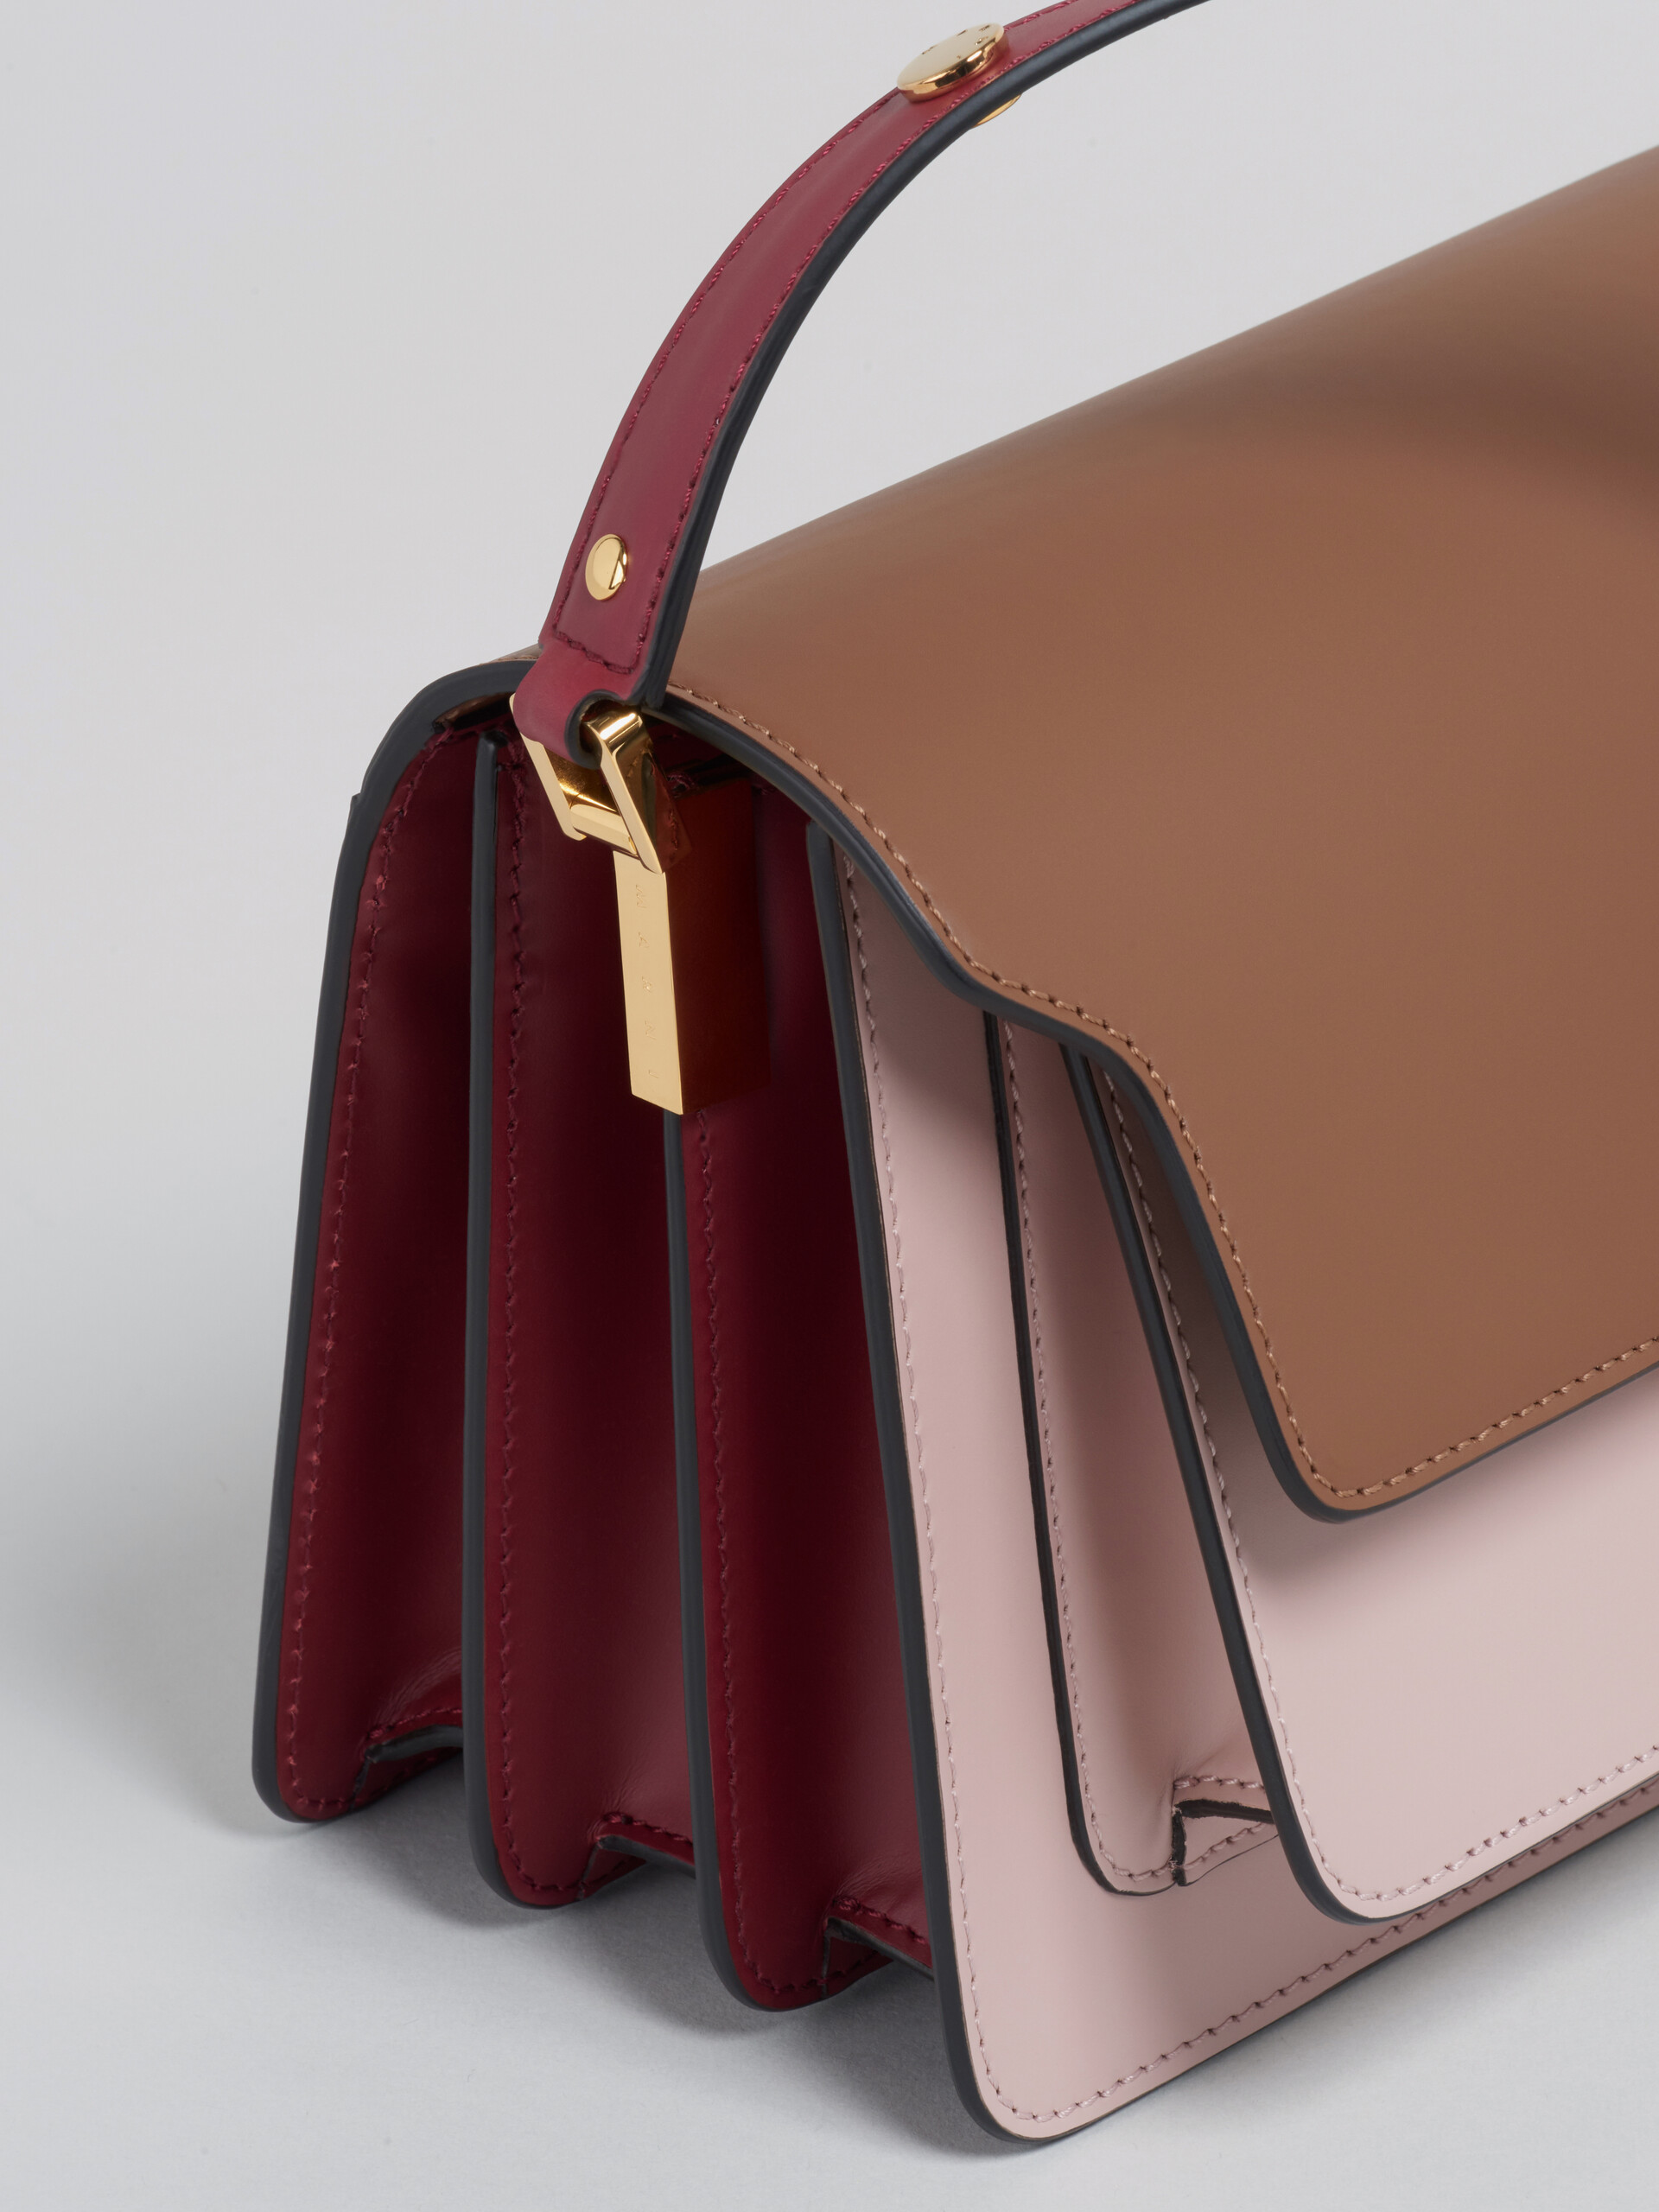 Bolso TRUNK de piel marrón rosa y roja - Bolsos de hombro - Image 4